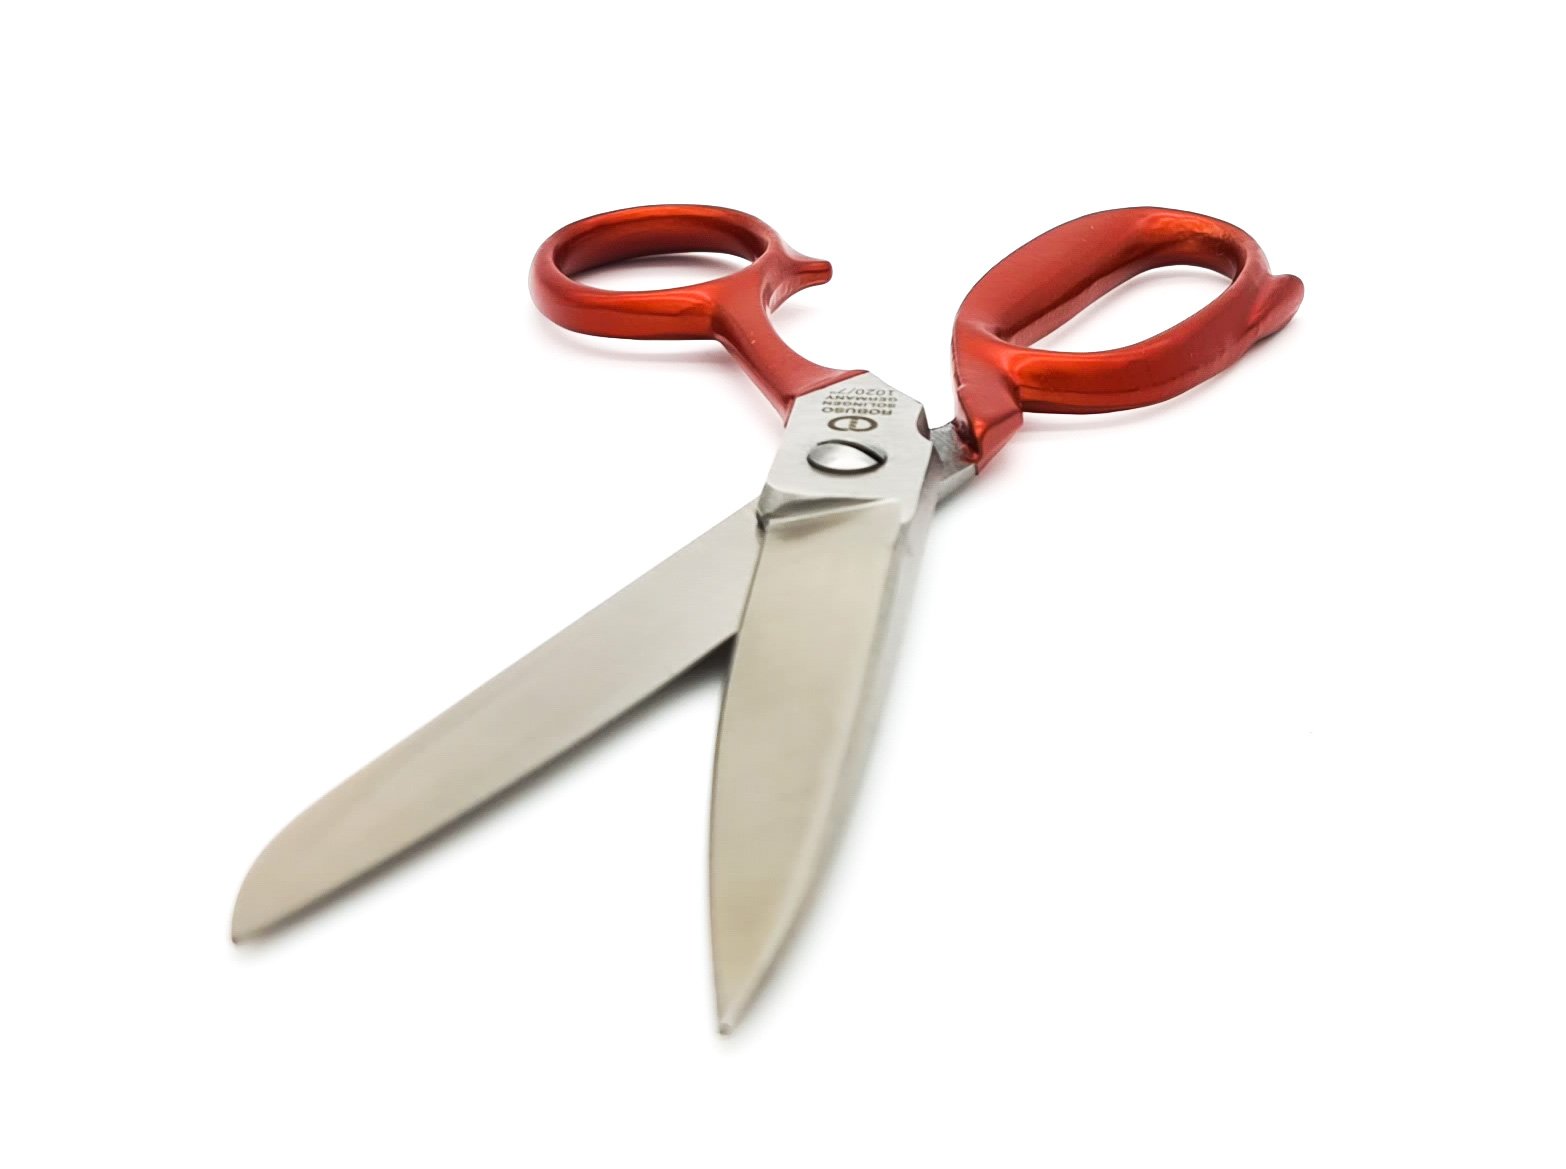 Tailor scissors 7" - Germany Solingen